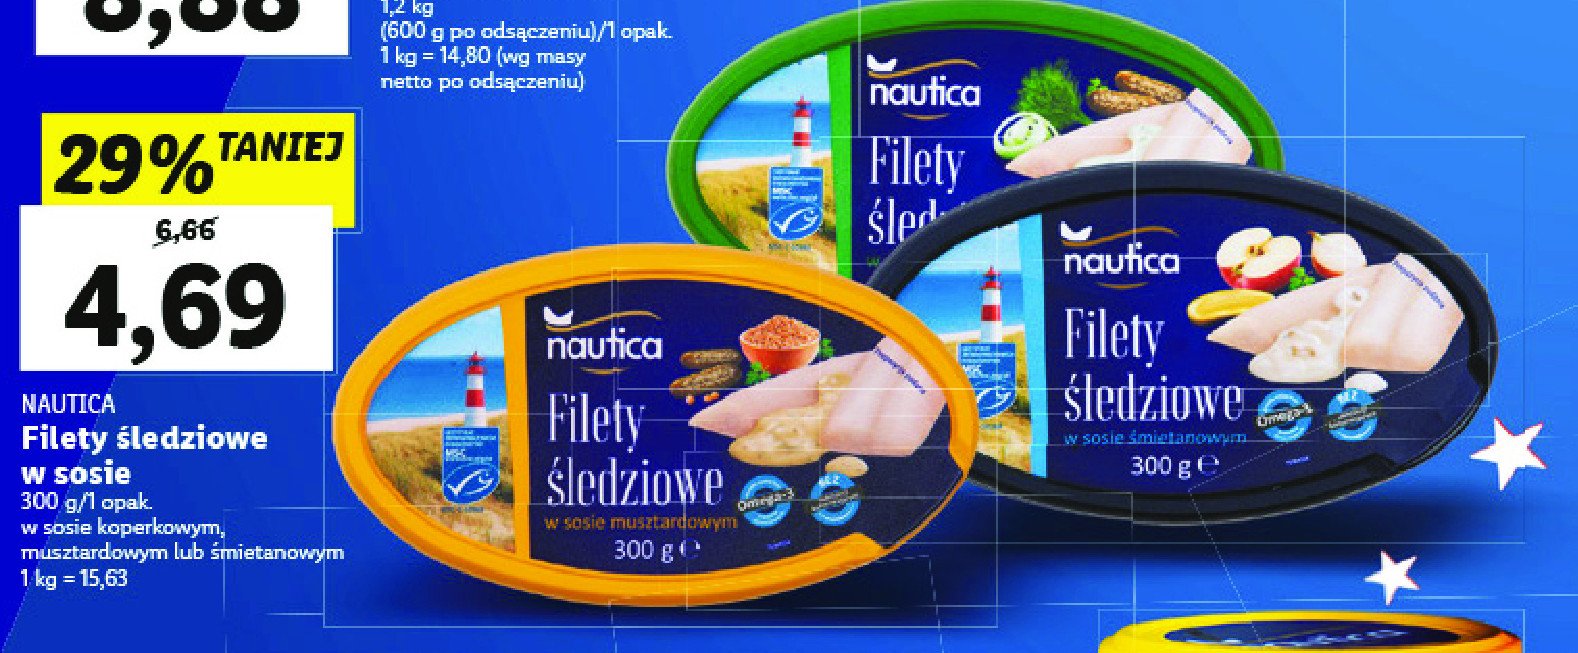 Filety śledziowe z ziołami Nautica schwartz promocja